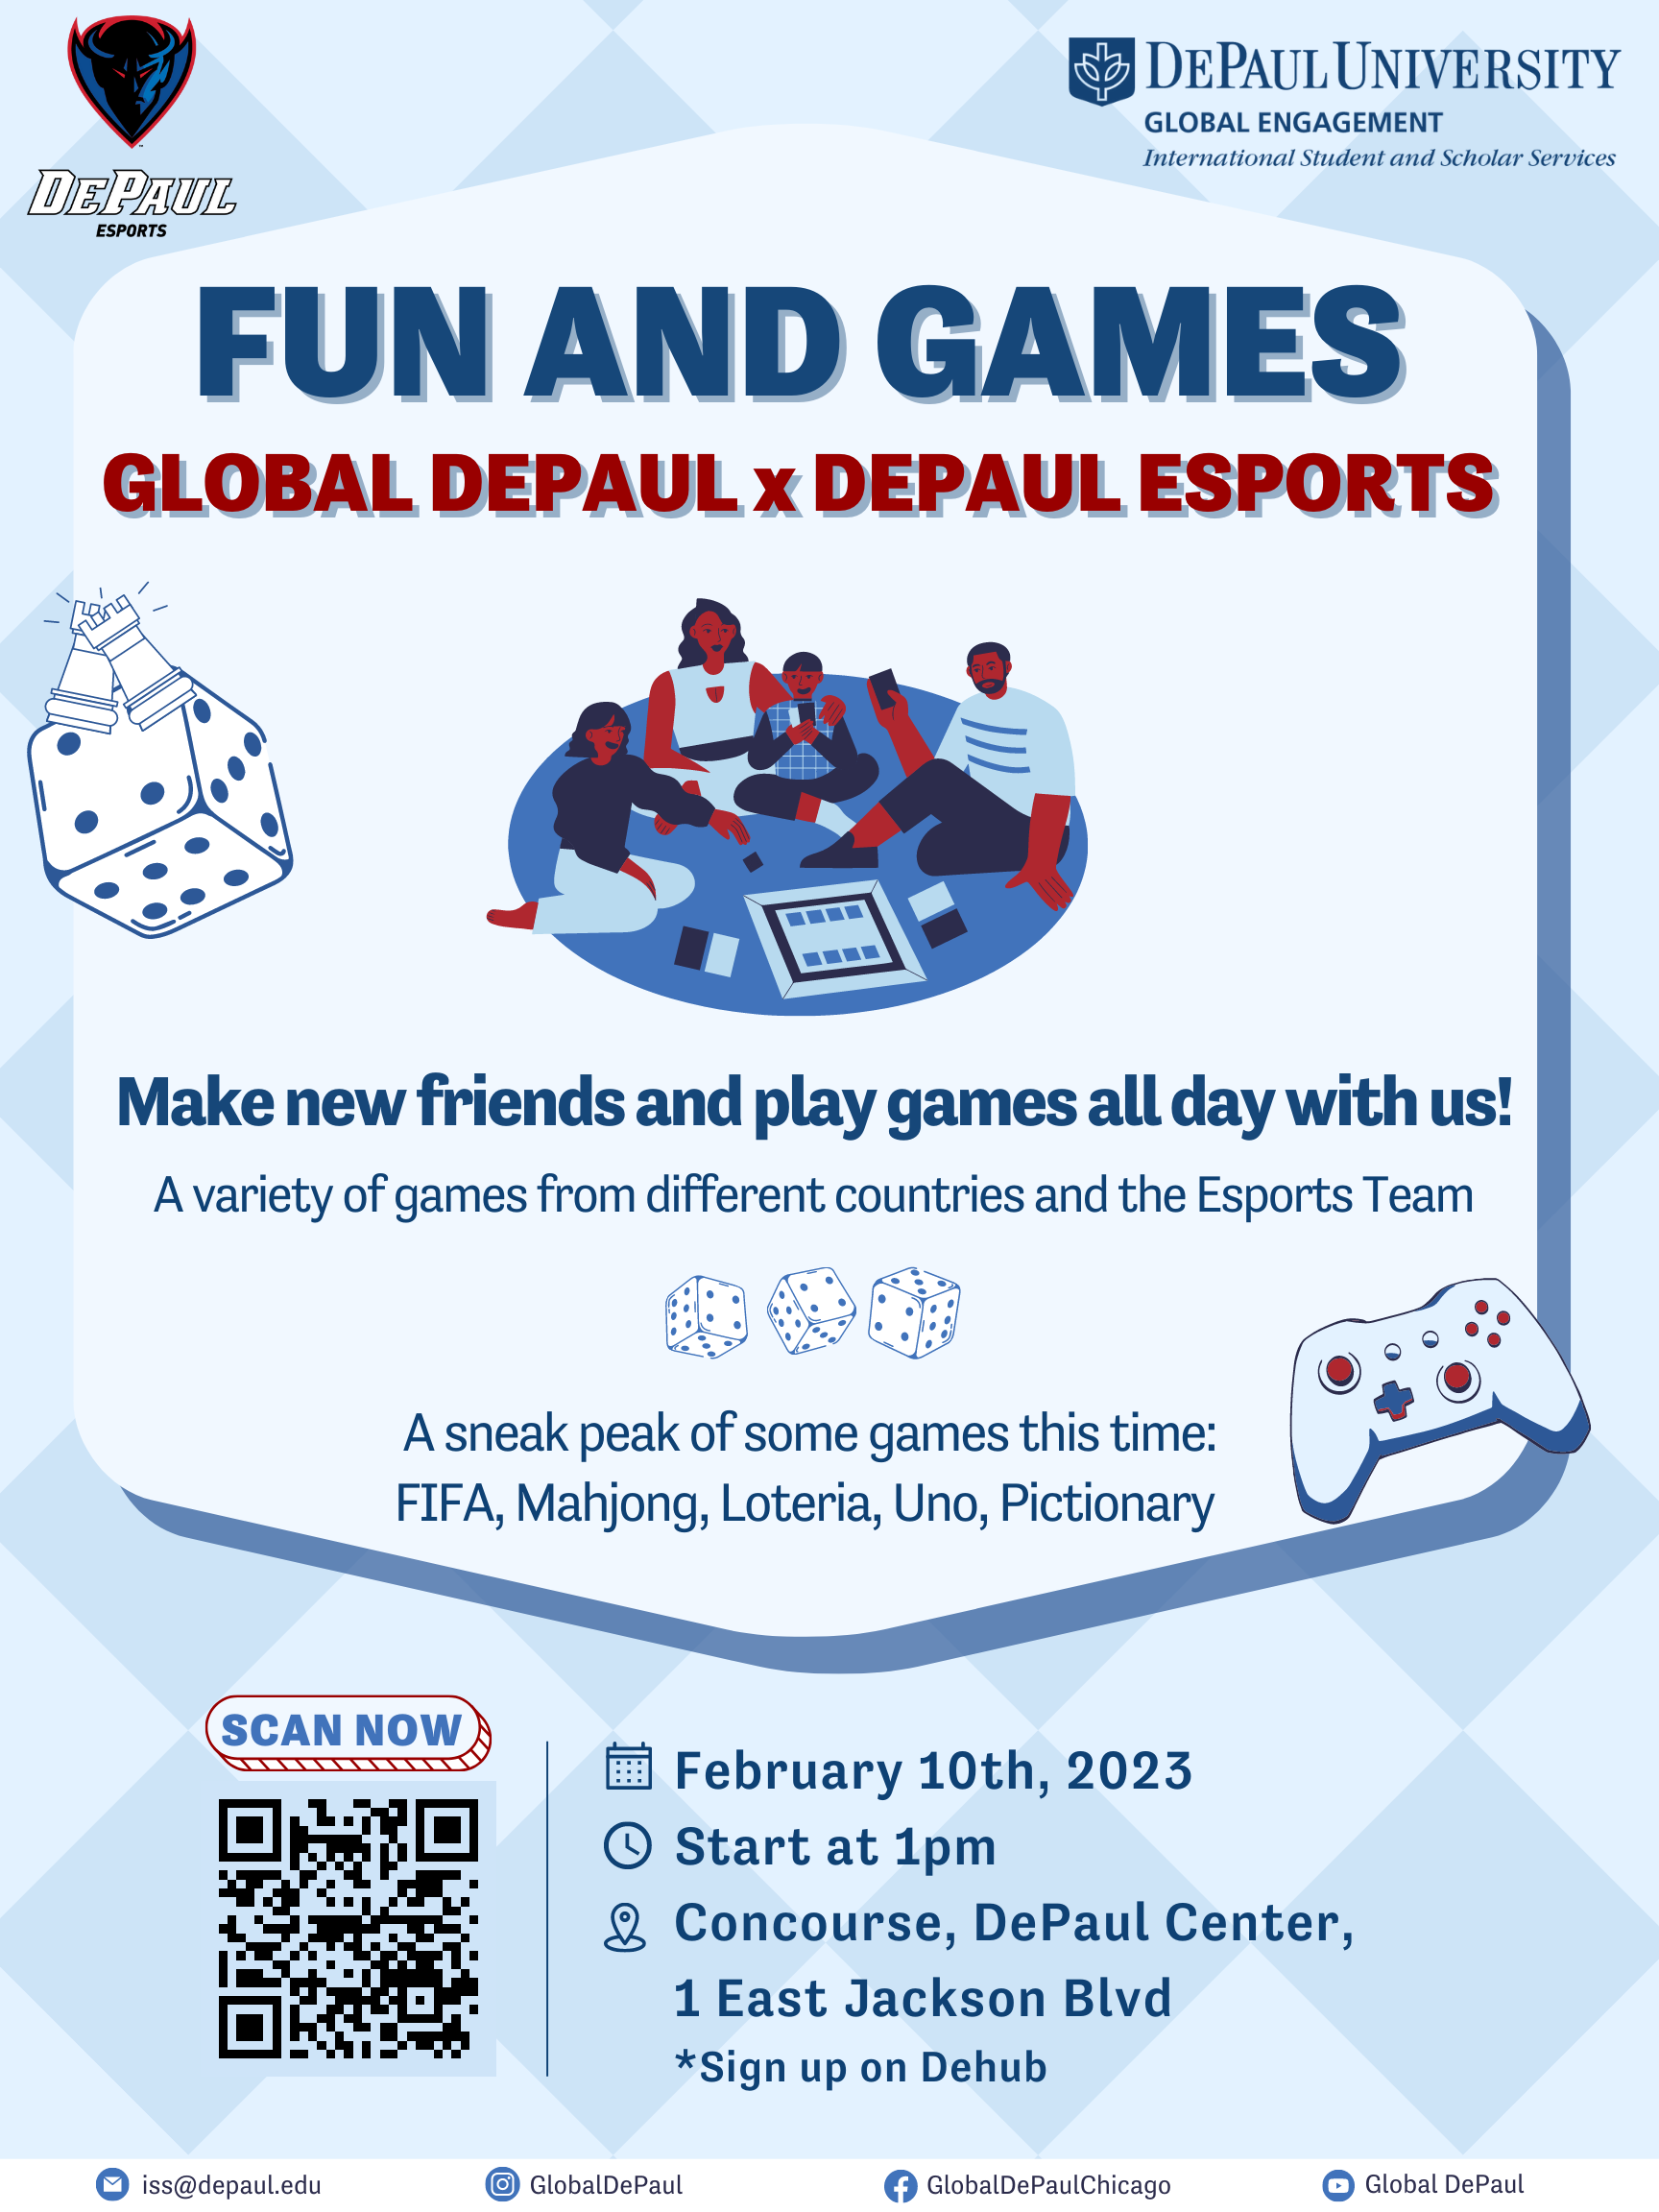 Fun and Games with Global DePaul x DePaul eSports